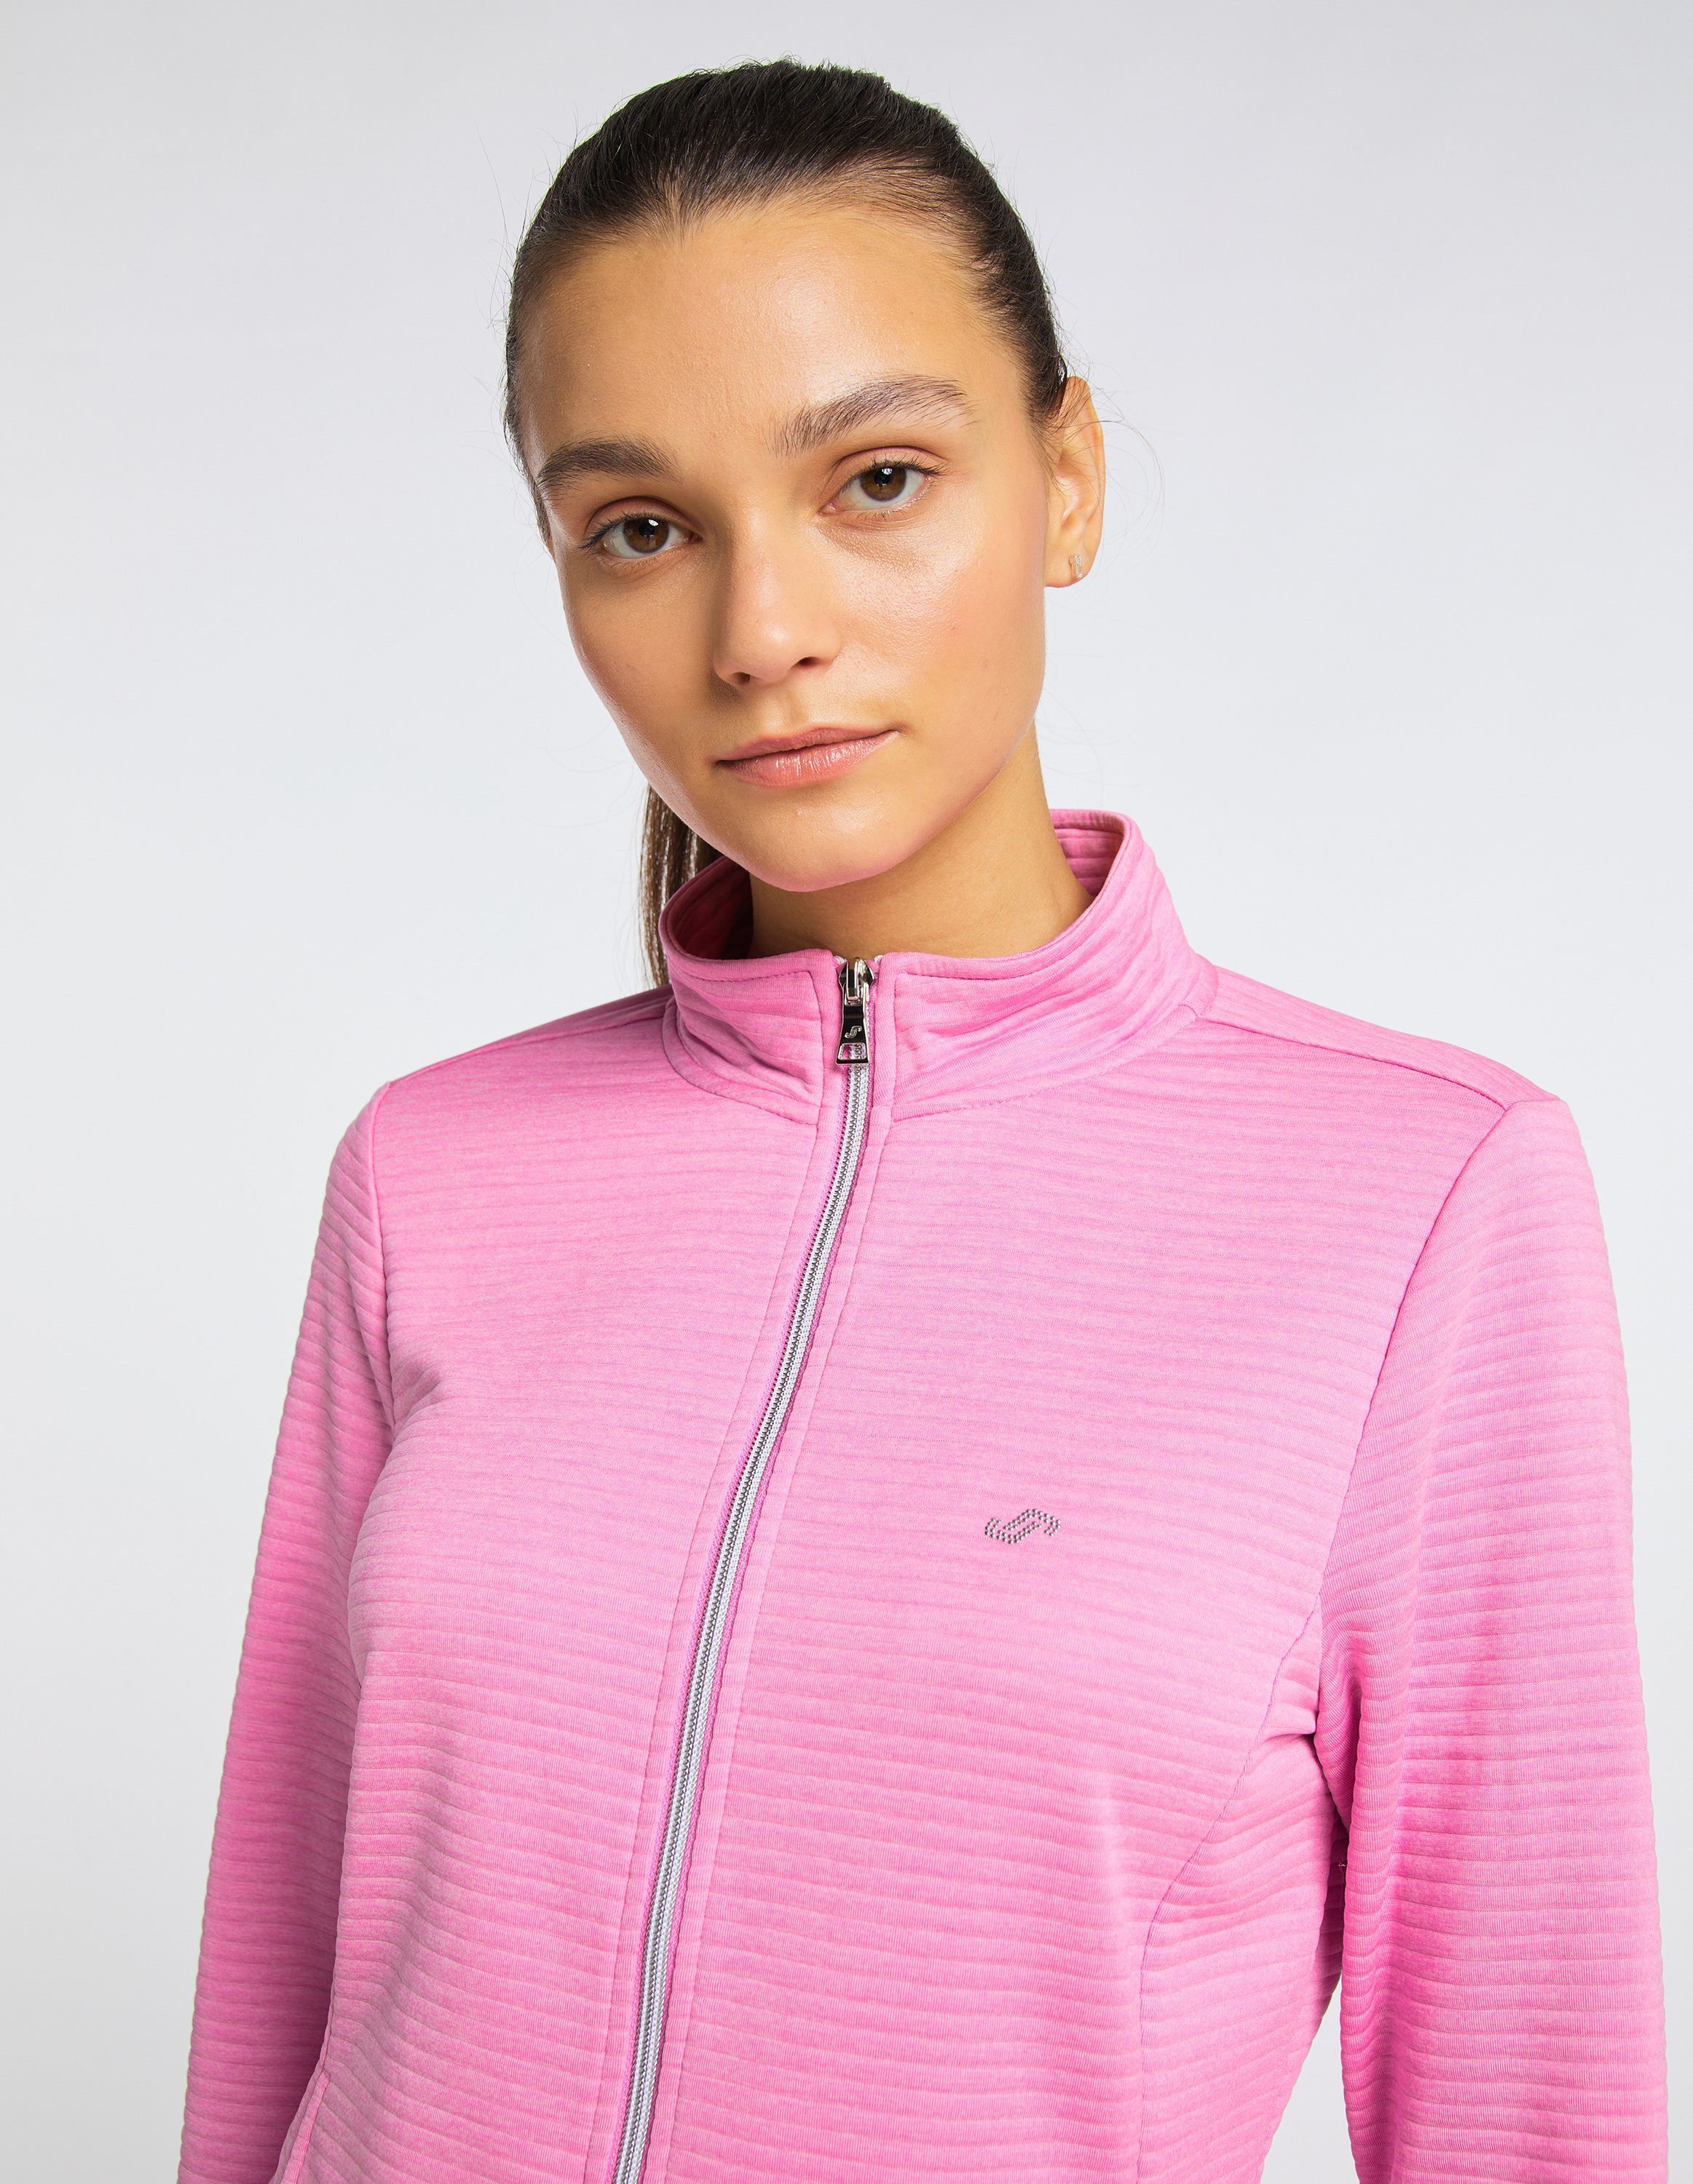 Joy PEGGY cyclam pink Sportswear melange Jacke Trainingsjacke